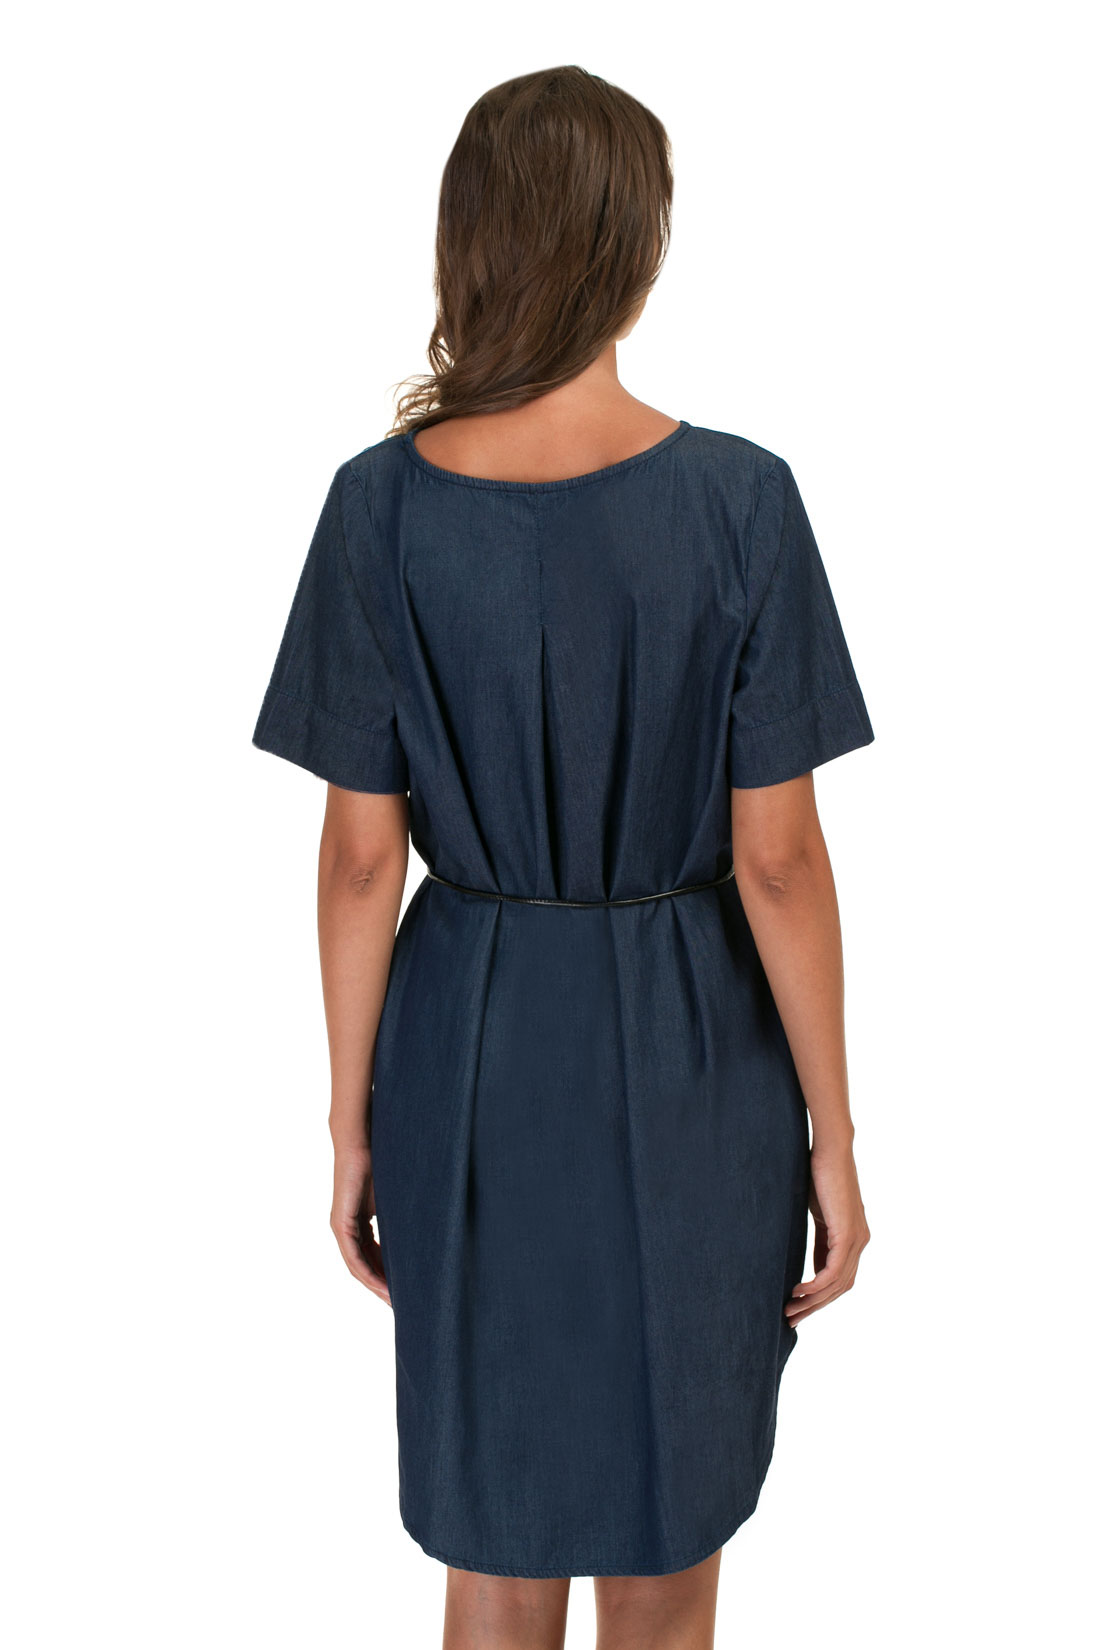 Платье из денима-шамбри (арт. baon B457027), размер XXL, цвет navy denim#синий Платье из денима-шамбри (арт. baon B457027) - фото 2